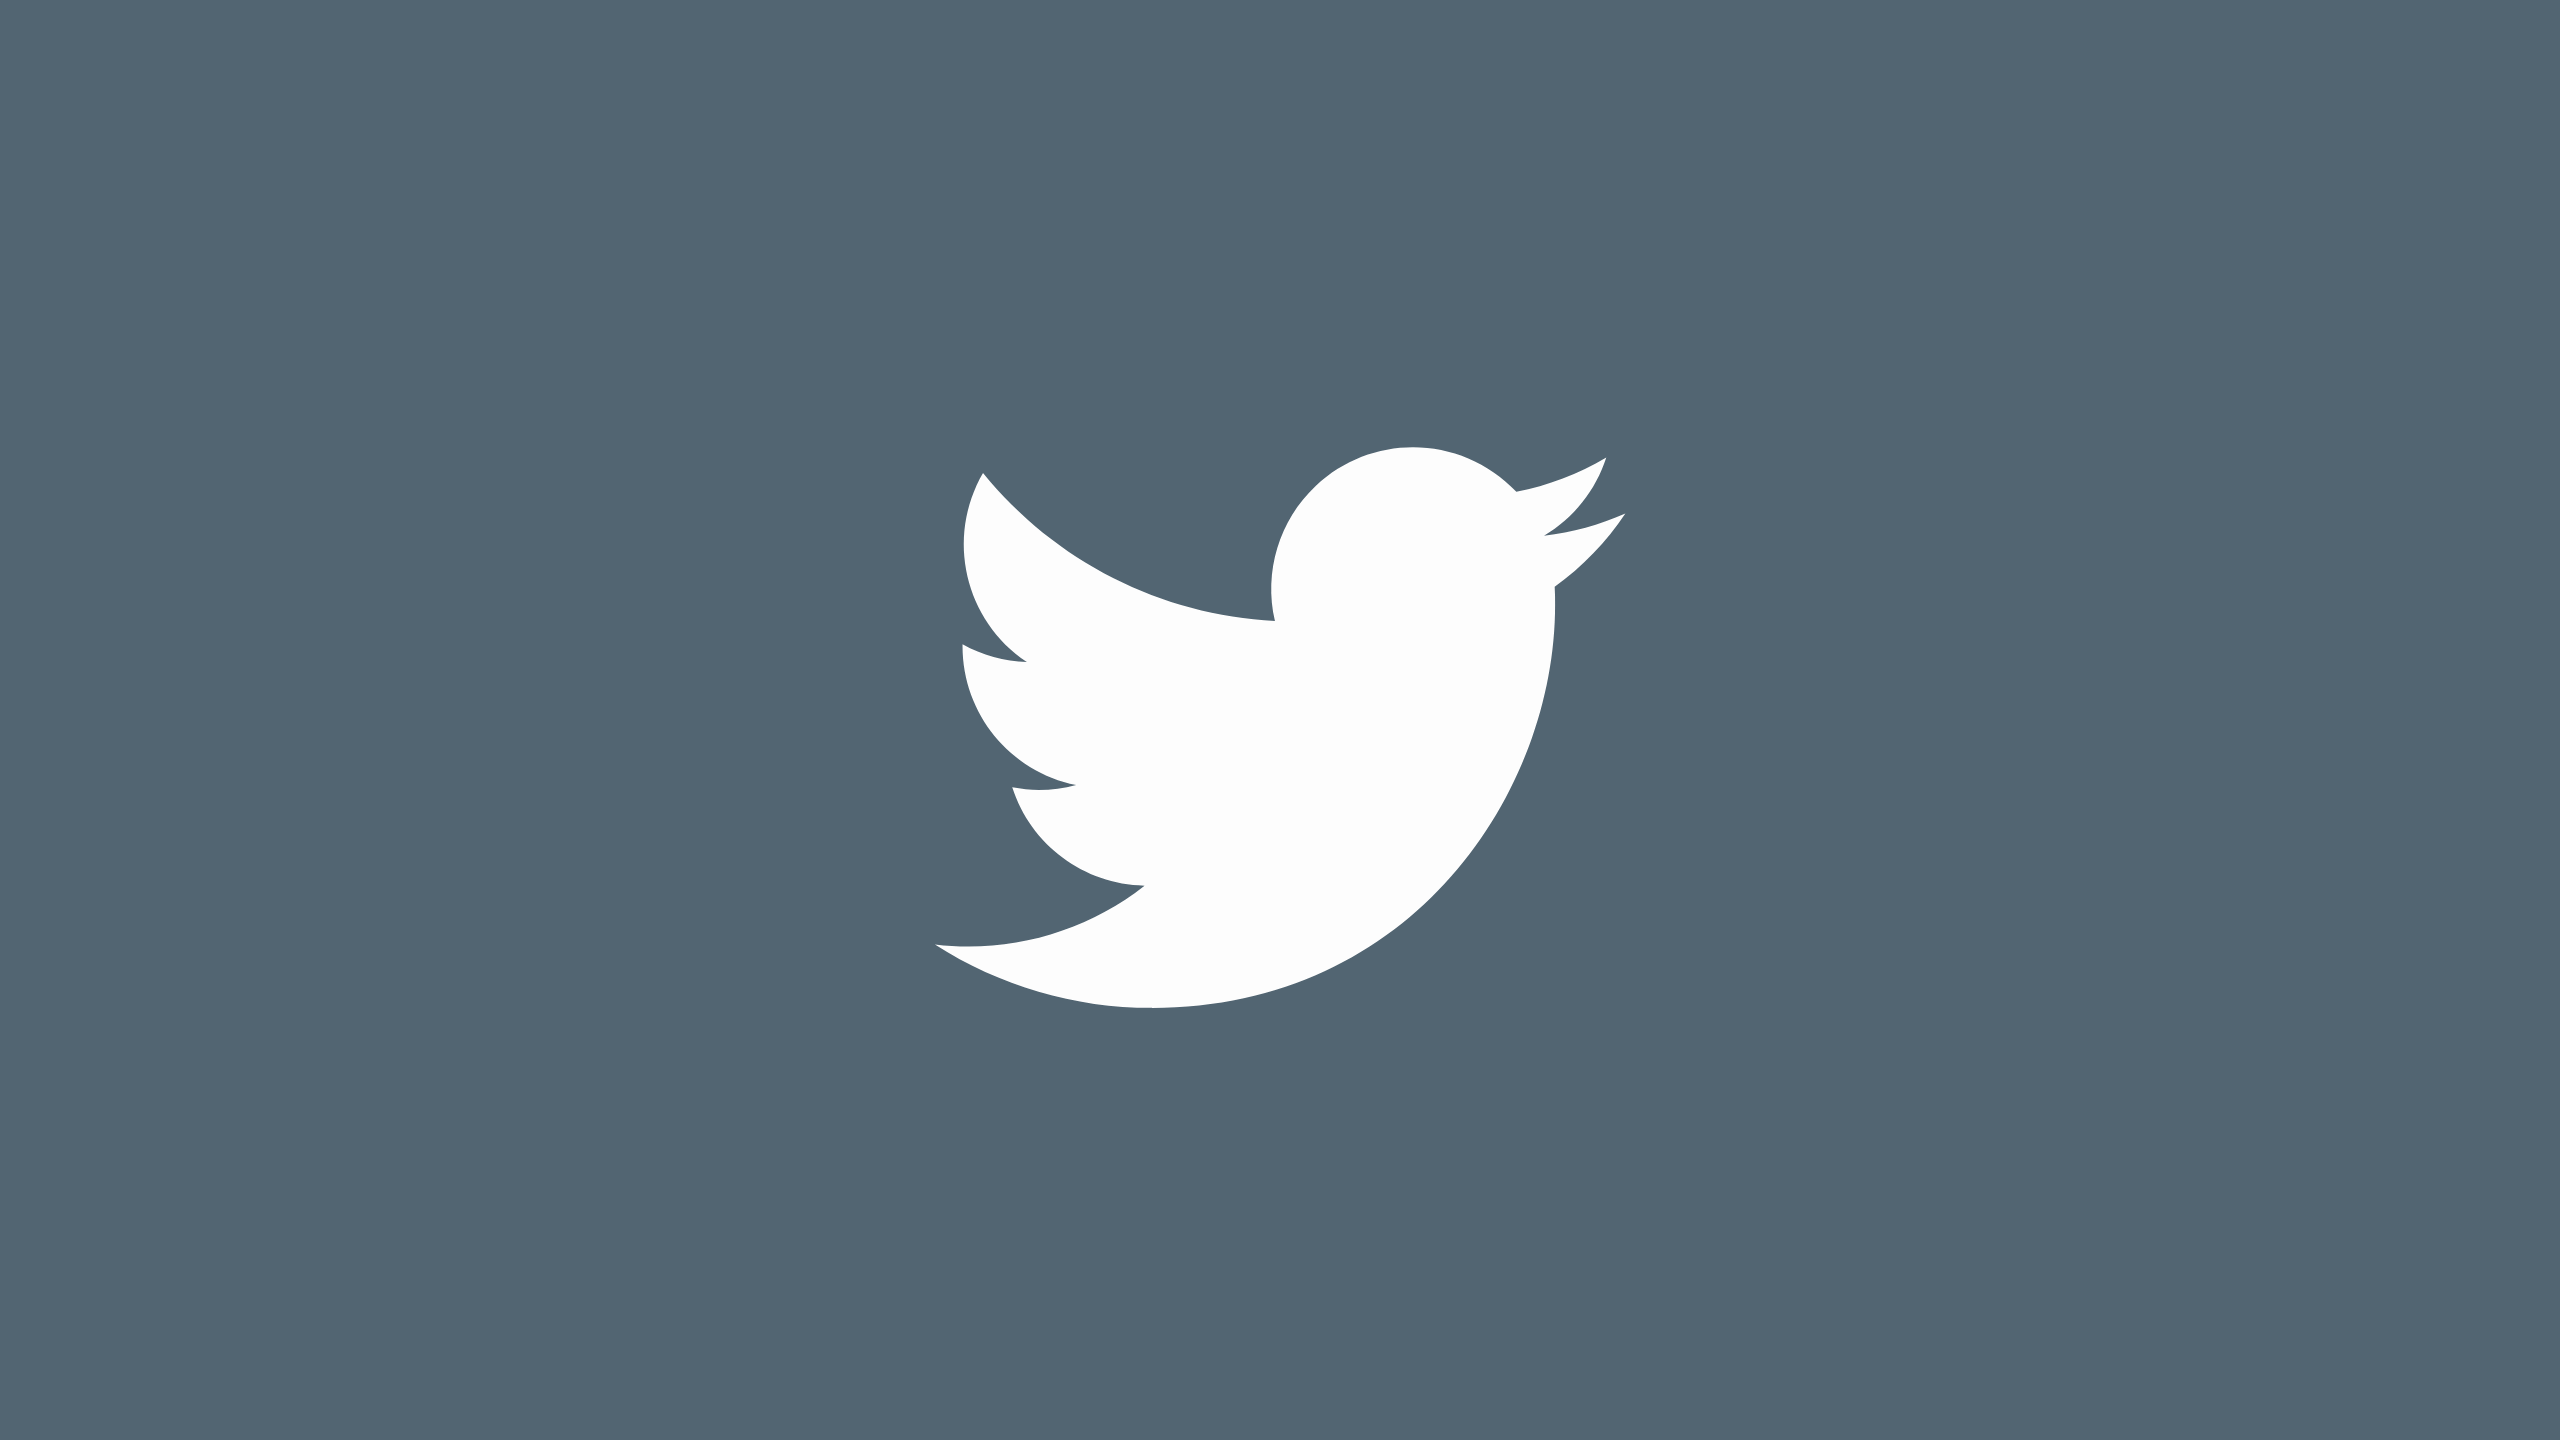 ट्विटर ने एक नया ट्विटर बीटा टेस्टिंग ऐप लॉन्च किया